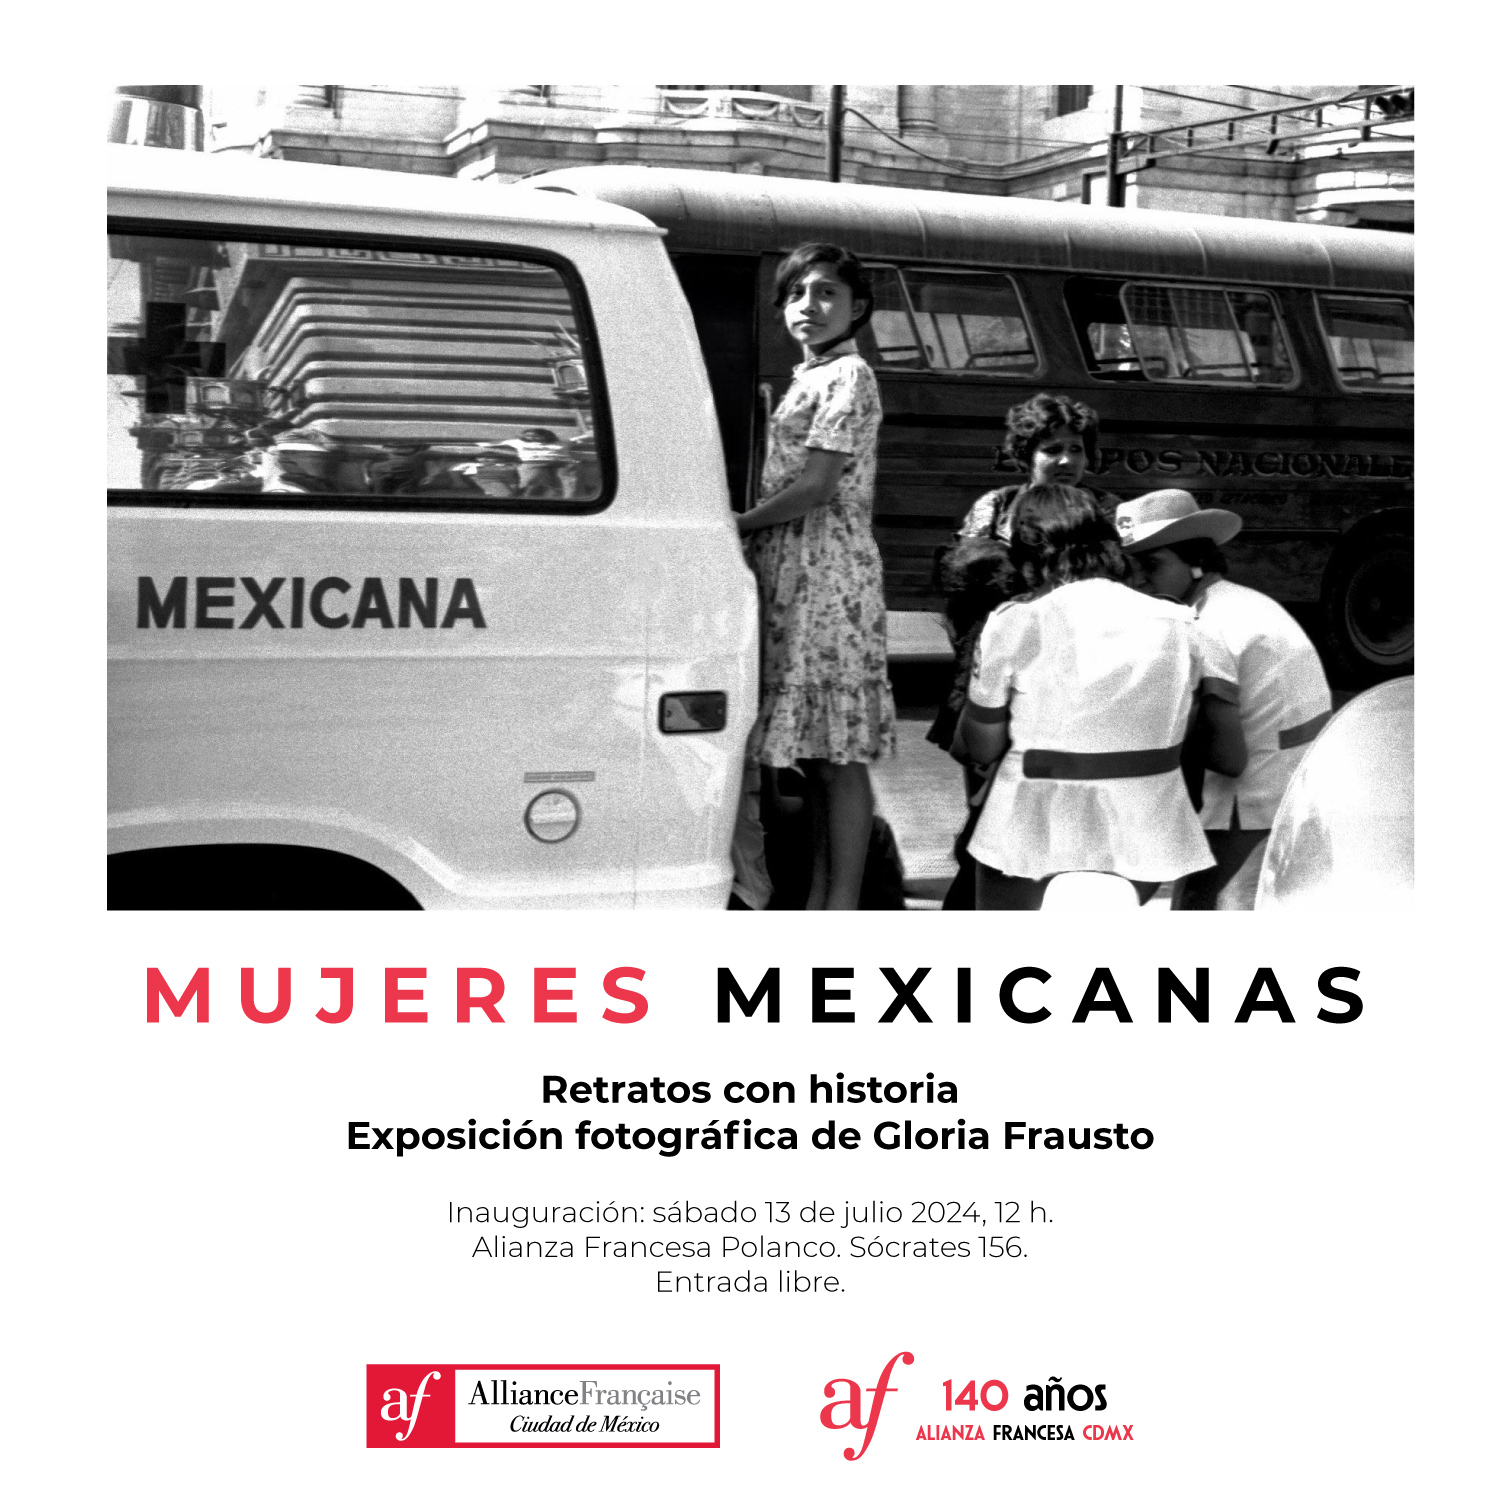 La AFMX inaugurará la exposición “Mujeres Mexicanas. Retratos con historia” de la fotógrafa Gloria Frausto